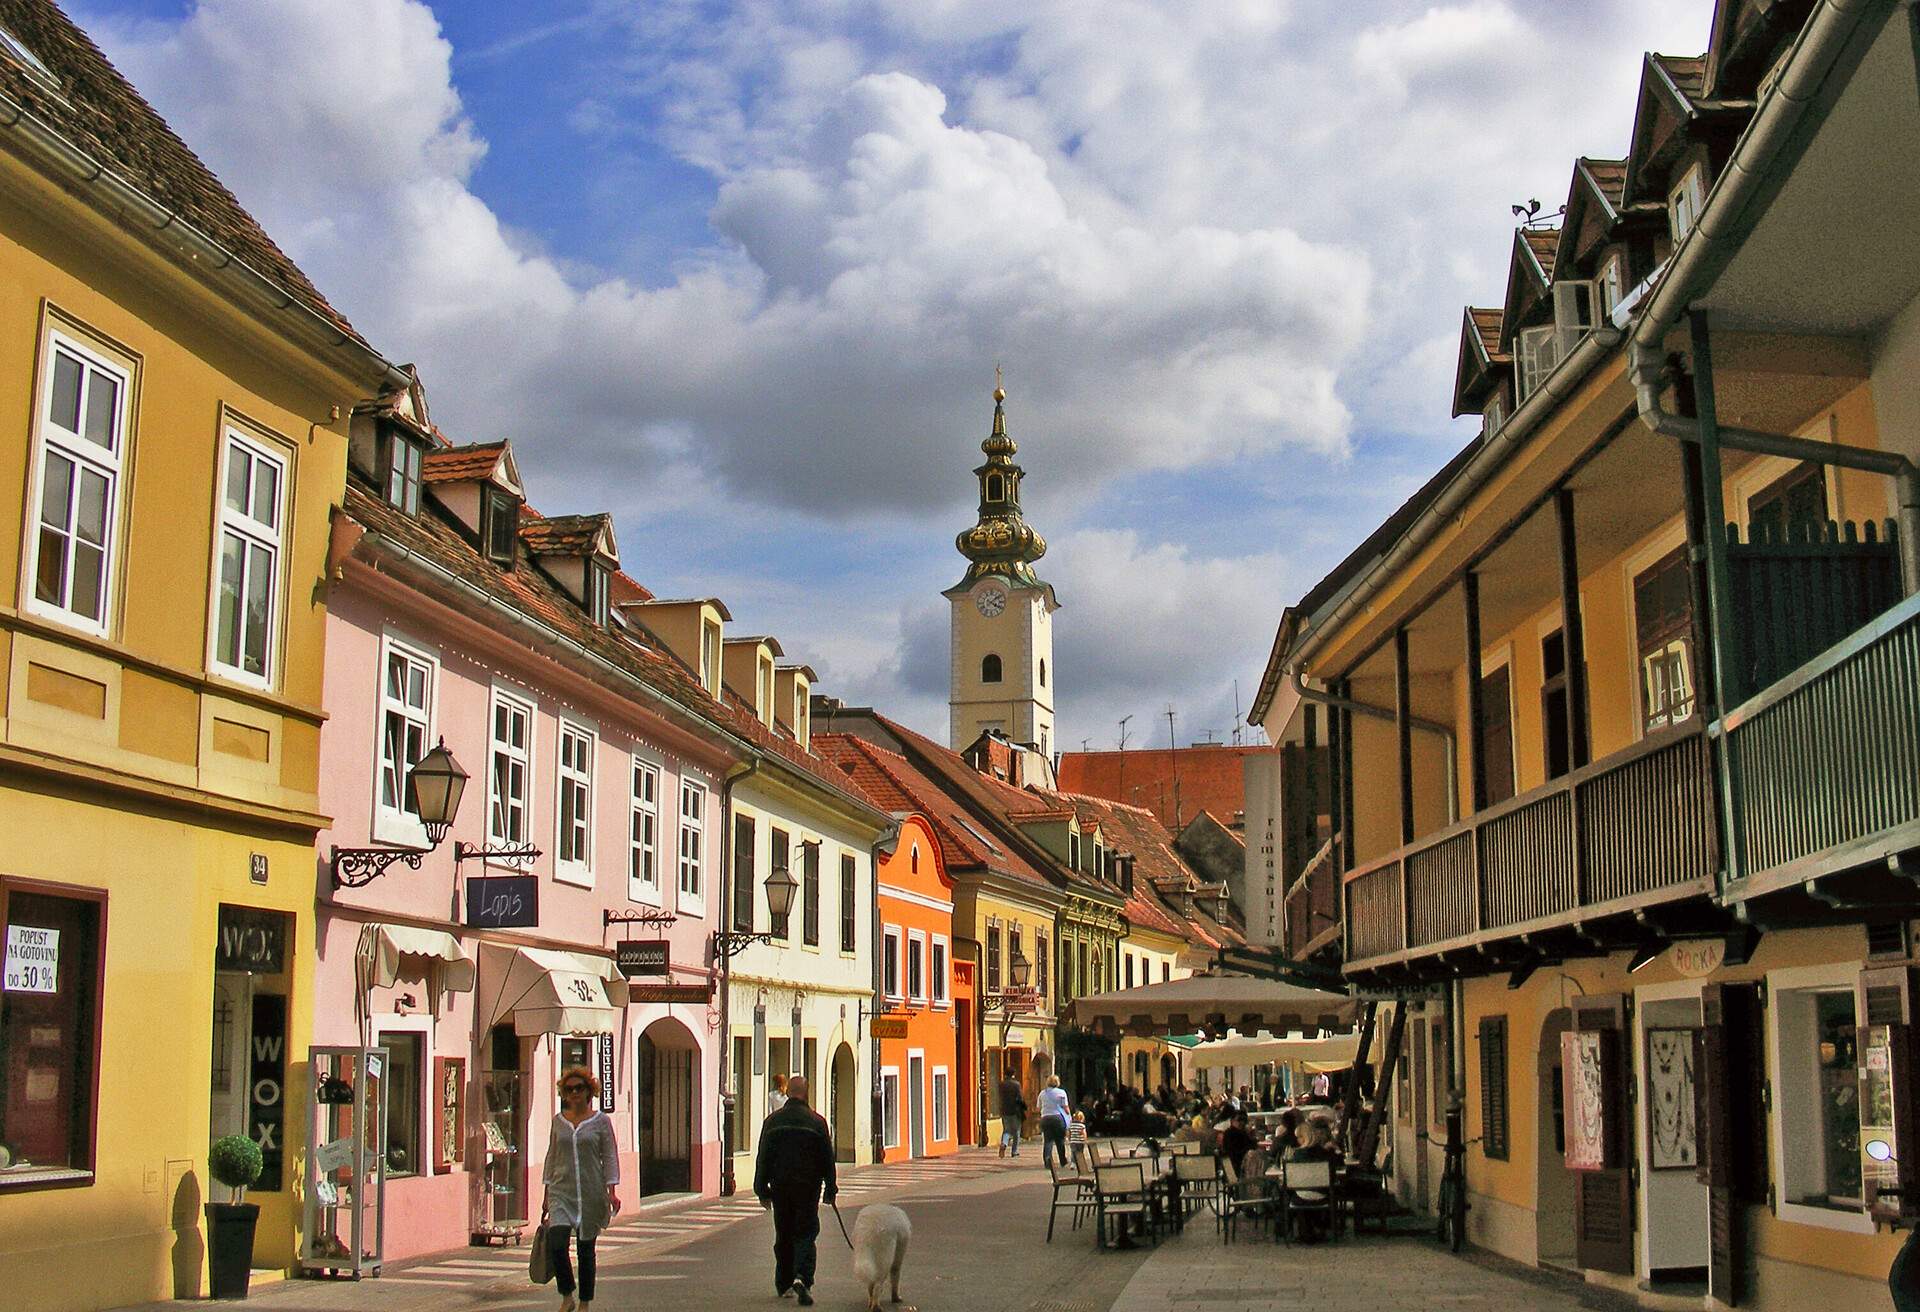 Photo taken in Zagreb, Croatia